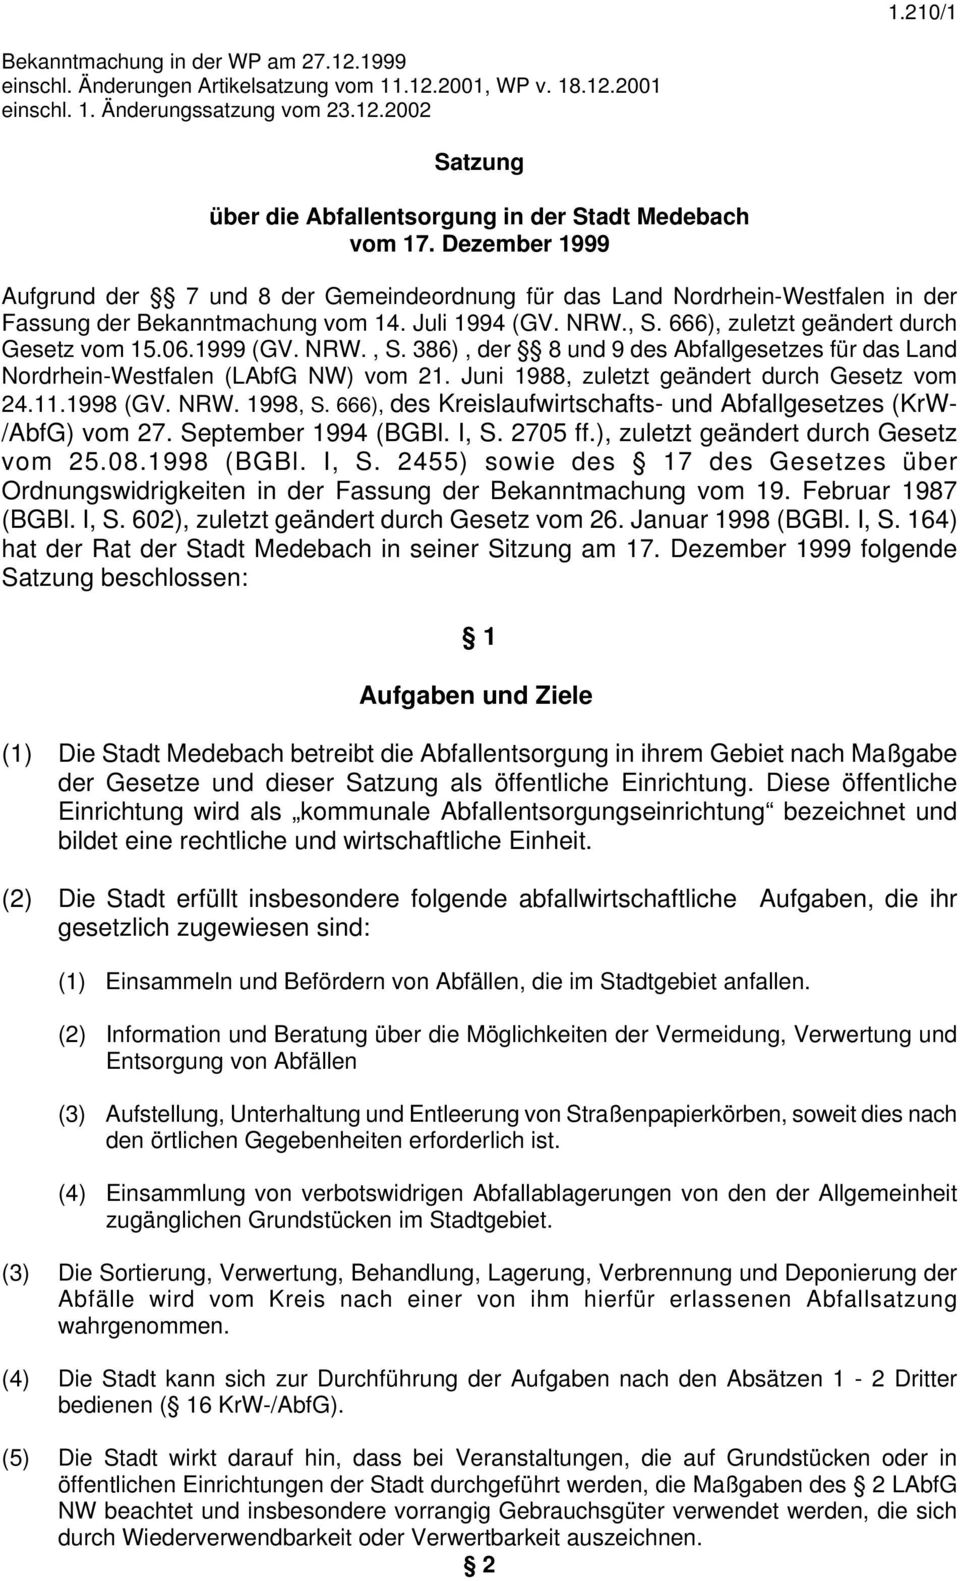 1999 (GV. NRW., S. 386), der 8 und 9 des Abfallgesetzes für das Land Nordrhein-Westfalen (LAbfG NW) vom 21. Juni 1988, zuletzt geändert durch Gesetz vom 24.11.1998 (GV. NRW. 1998, S.